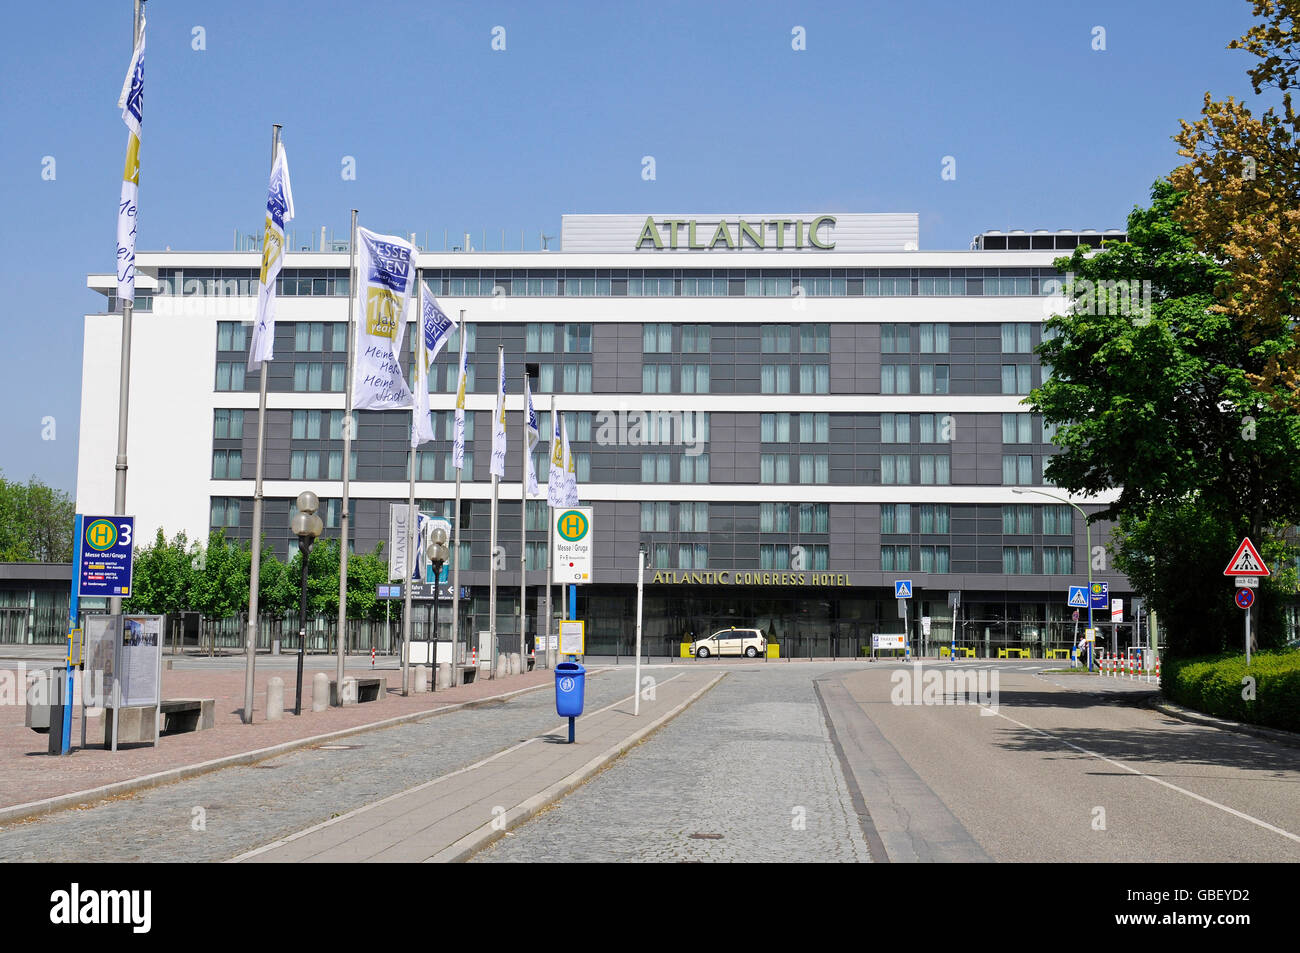 Atlantic Congress Hotel, Gruga Hall, justo, Essen, Renania del Norte-Westfalia, Alemania Foto de stock